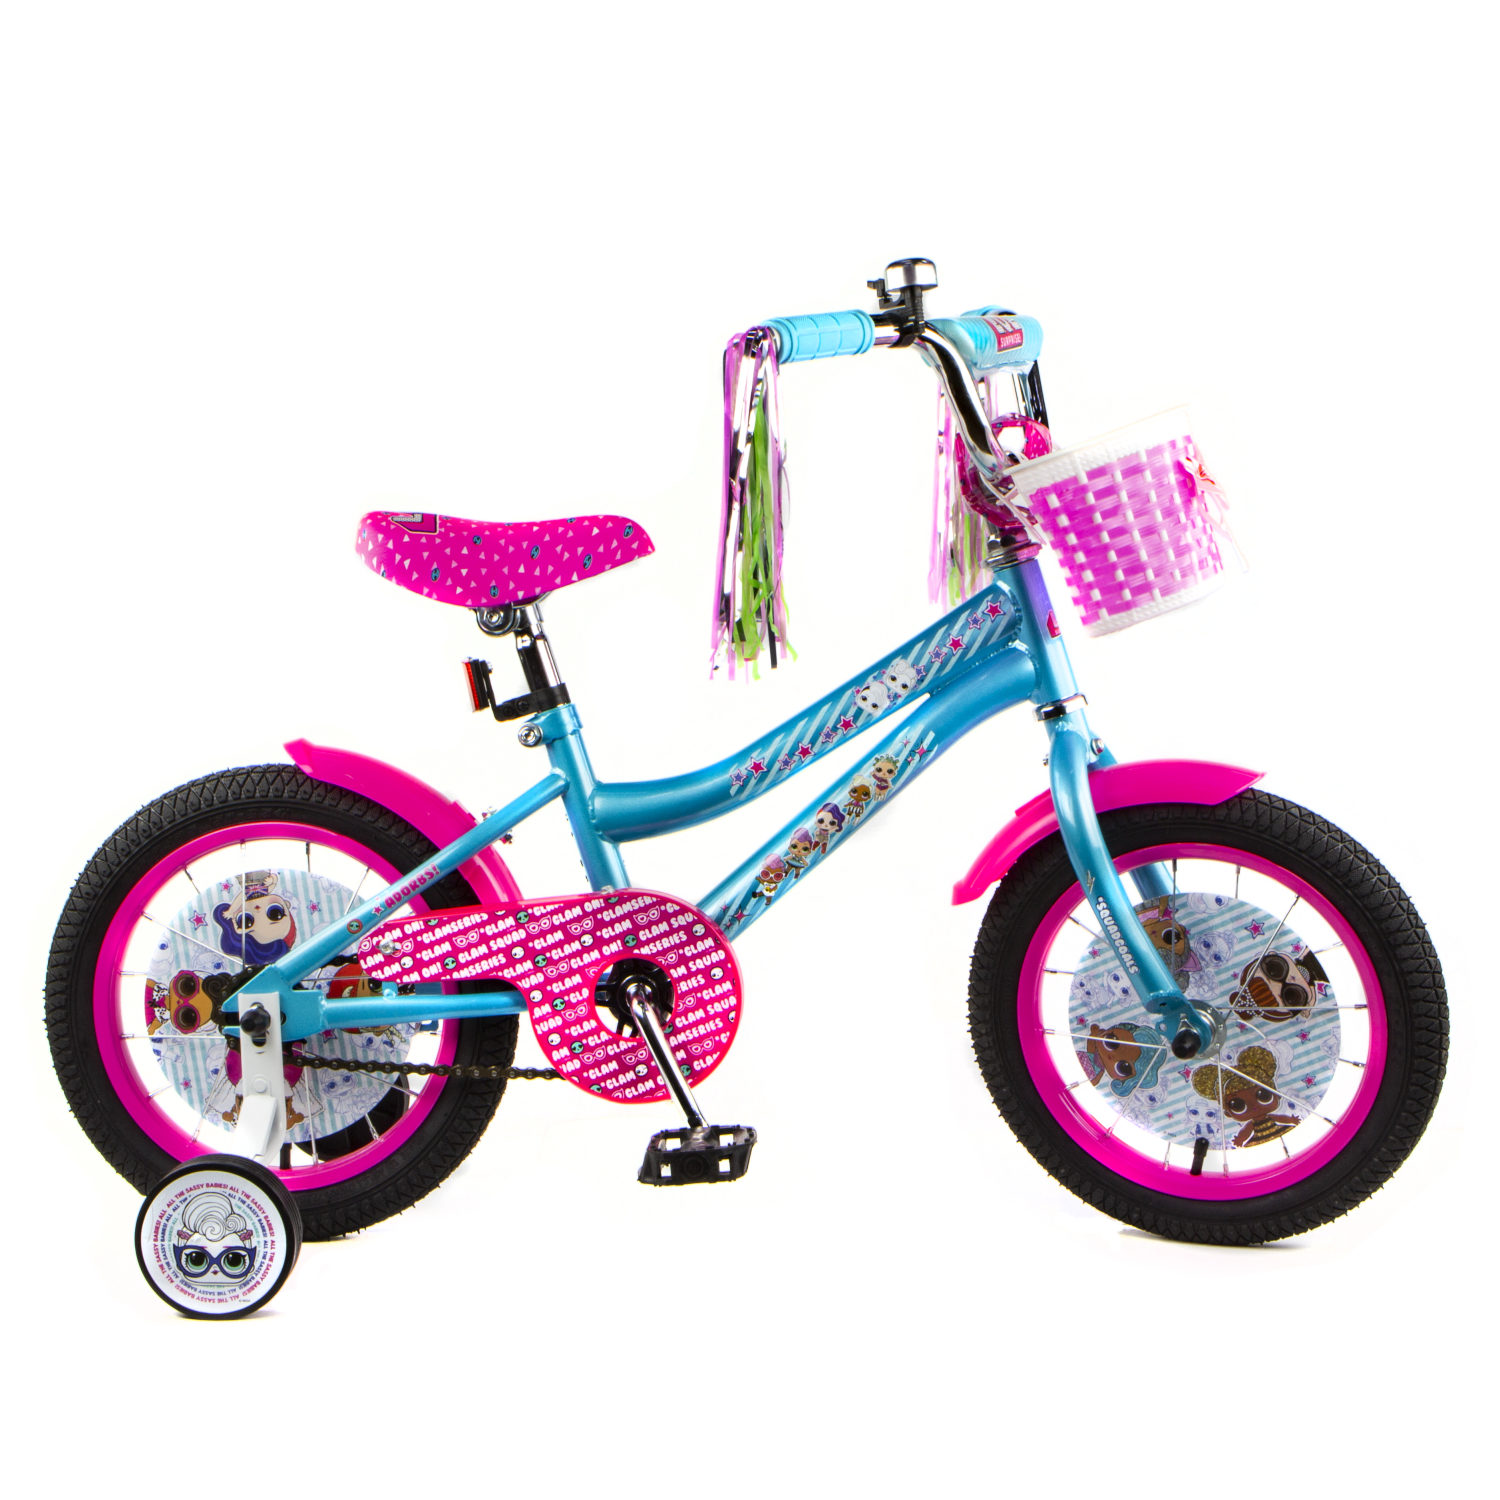 Велосипед розовый 14. Детский велосипед Jaguar MS-162 Alu. Велосипед навигатор Бинго 14. Велосипед Энчантималс 14 дюймов.